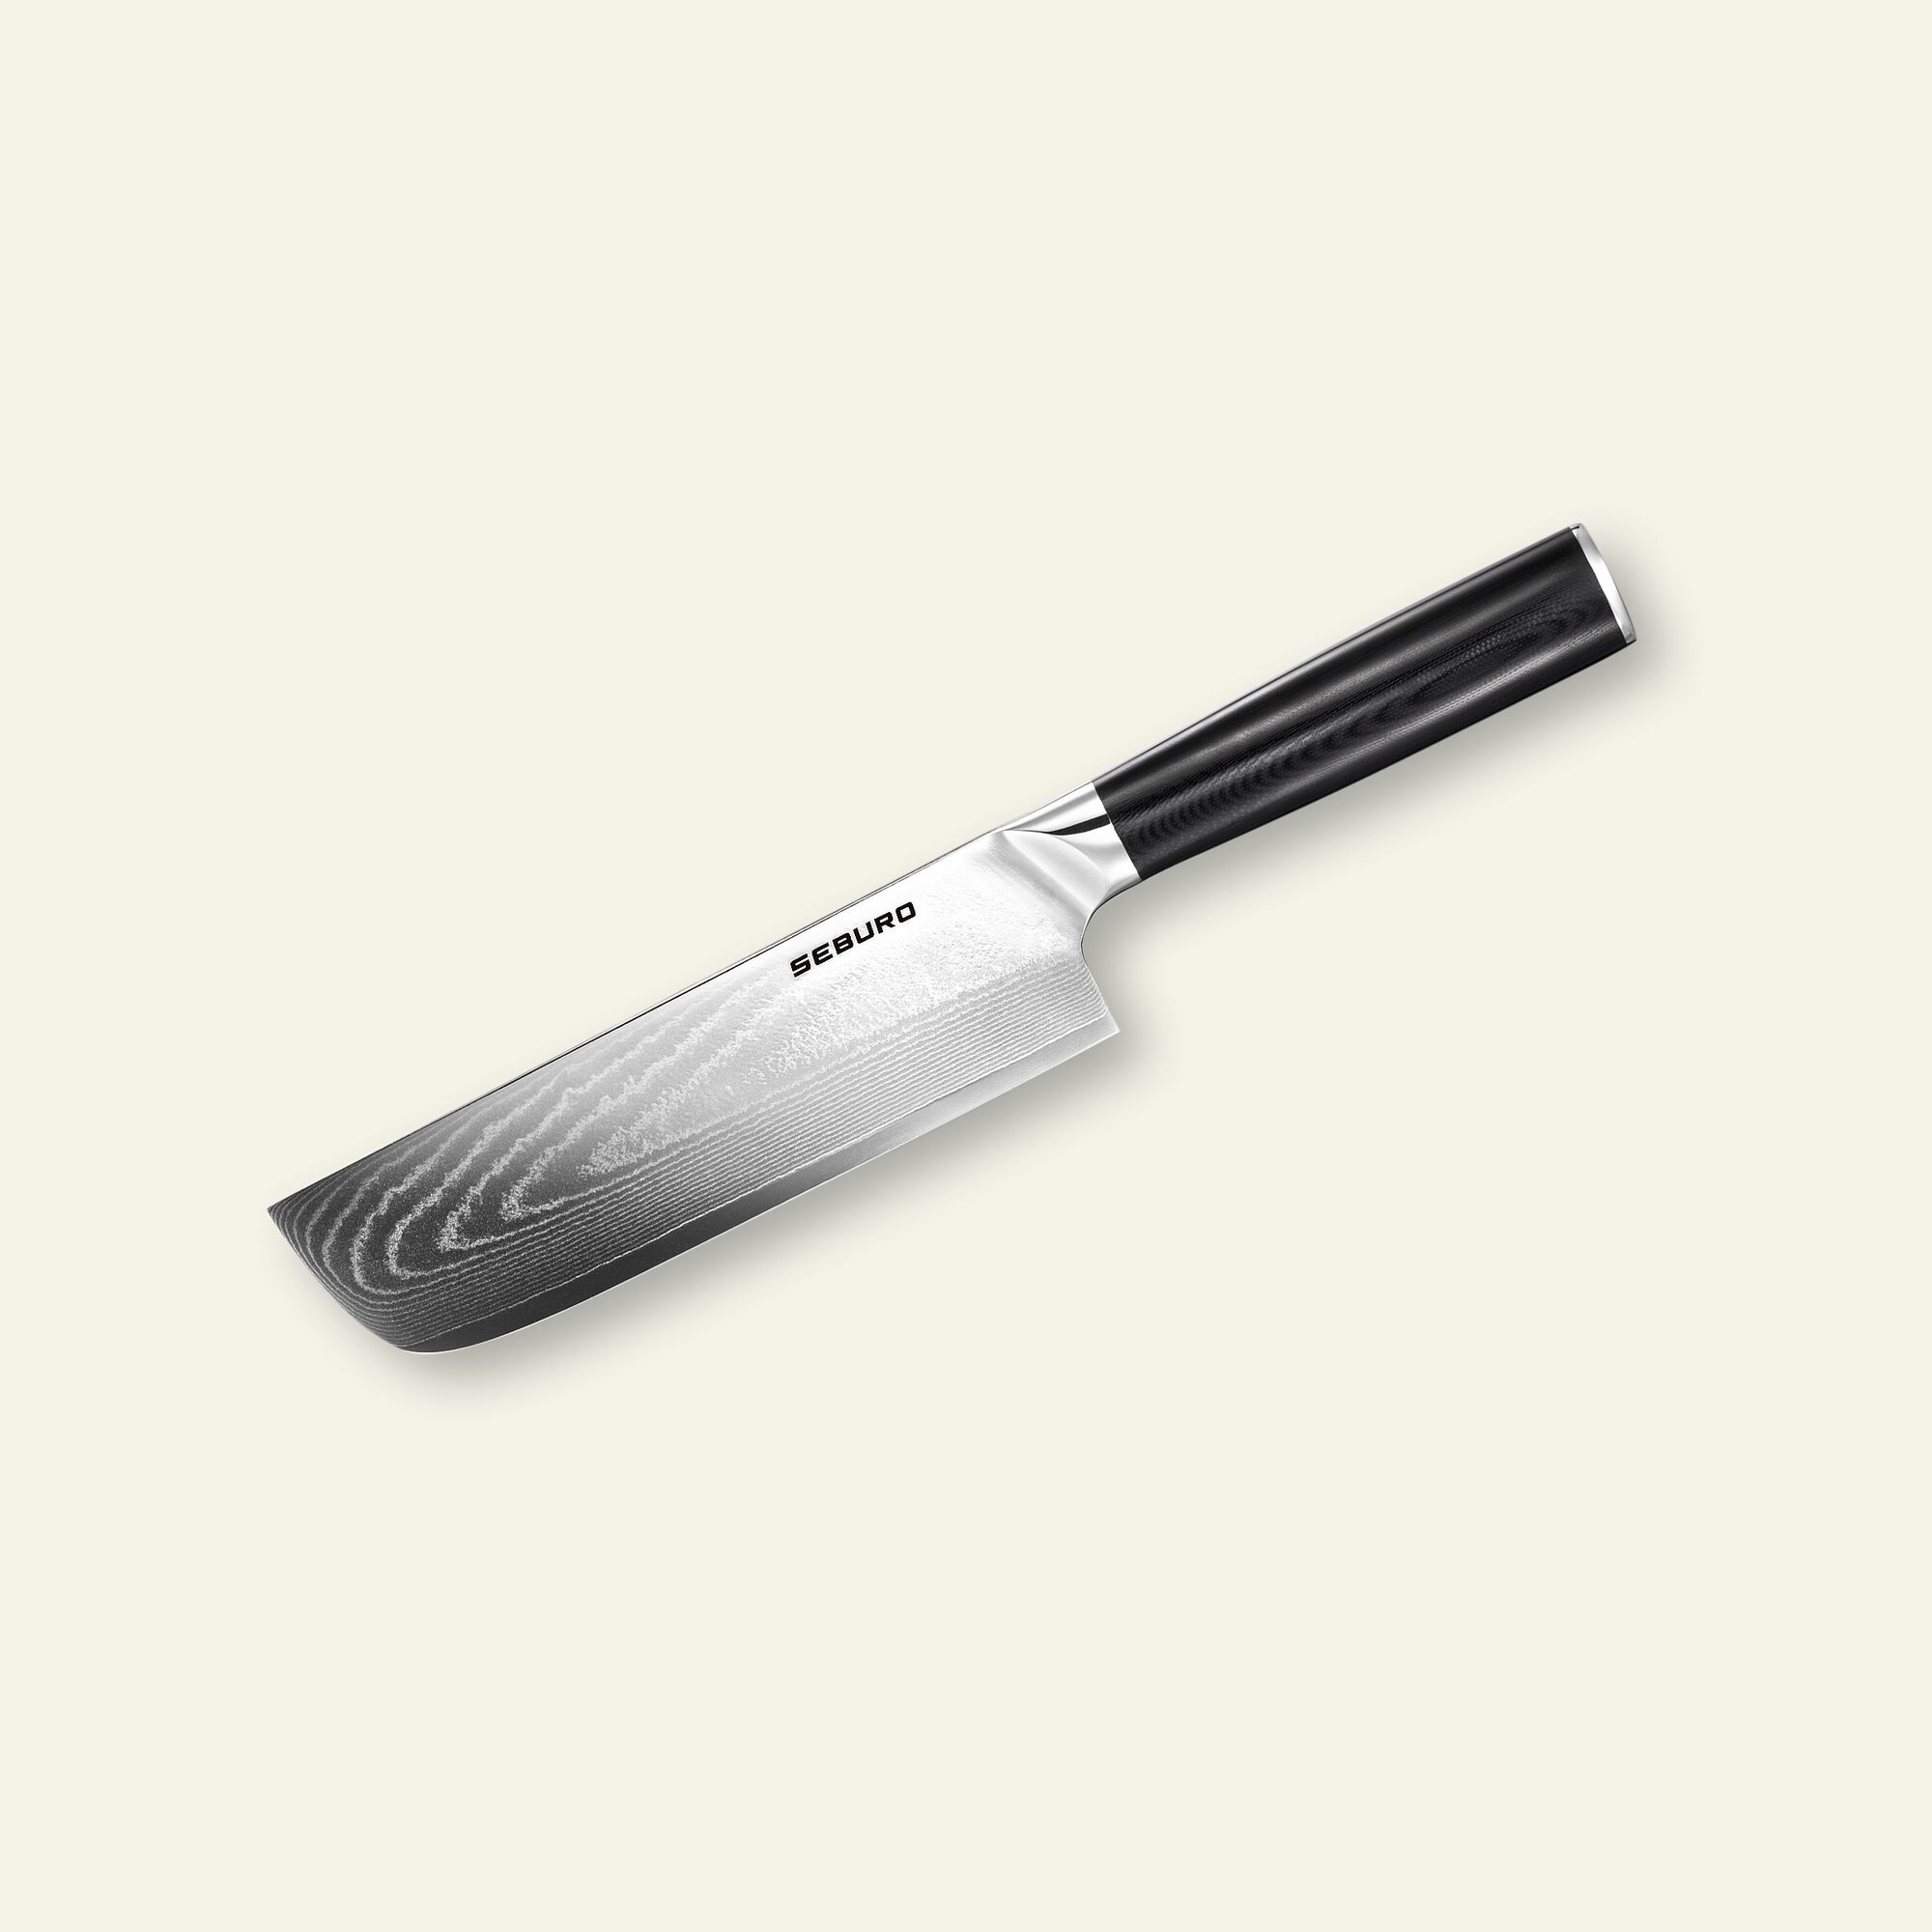 Нож кухонный профессиональный Seburo SARADA Damascus японский Накири топорик 17 см